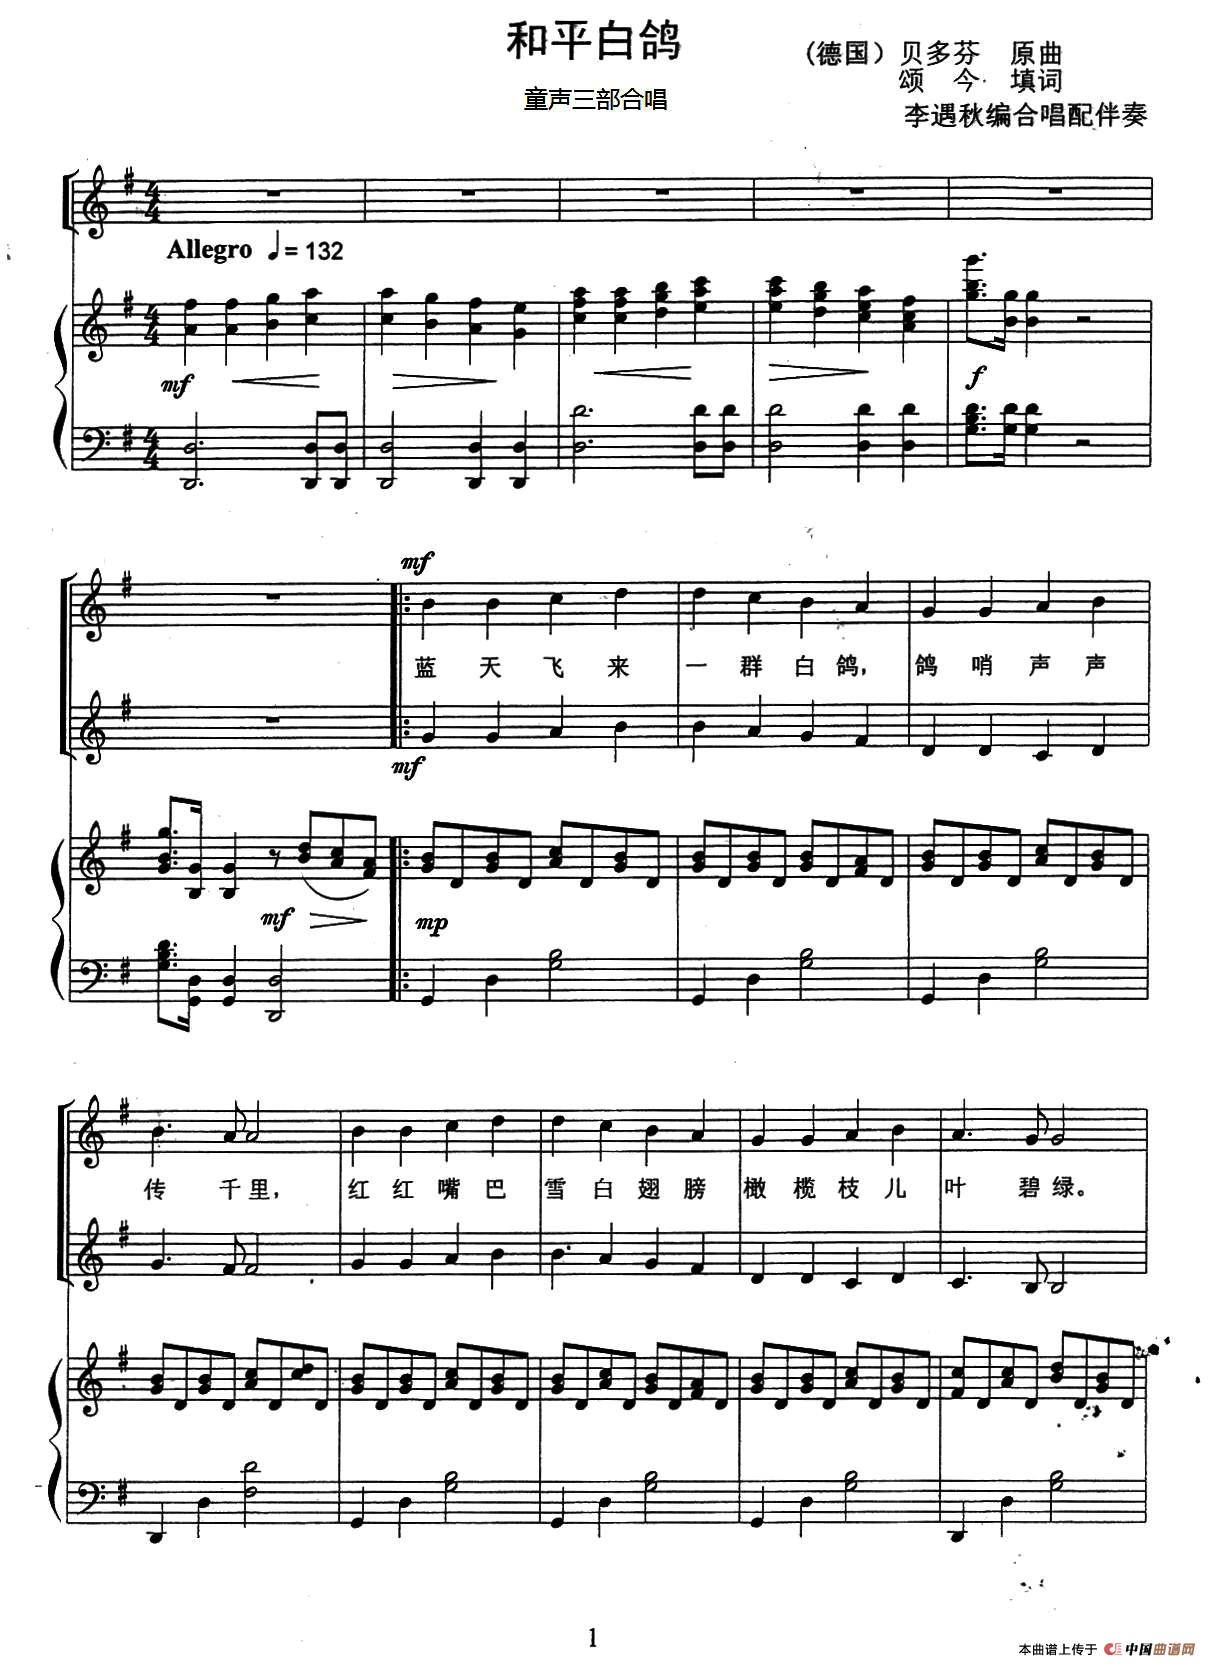 和平白鸽（童声三部合唱、正谱版）(1)_03、和平白鸽（童声合唱）（五线谱）1.jpg